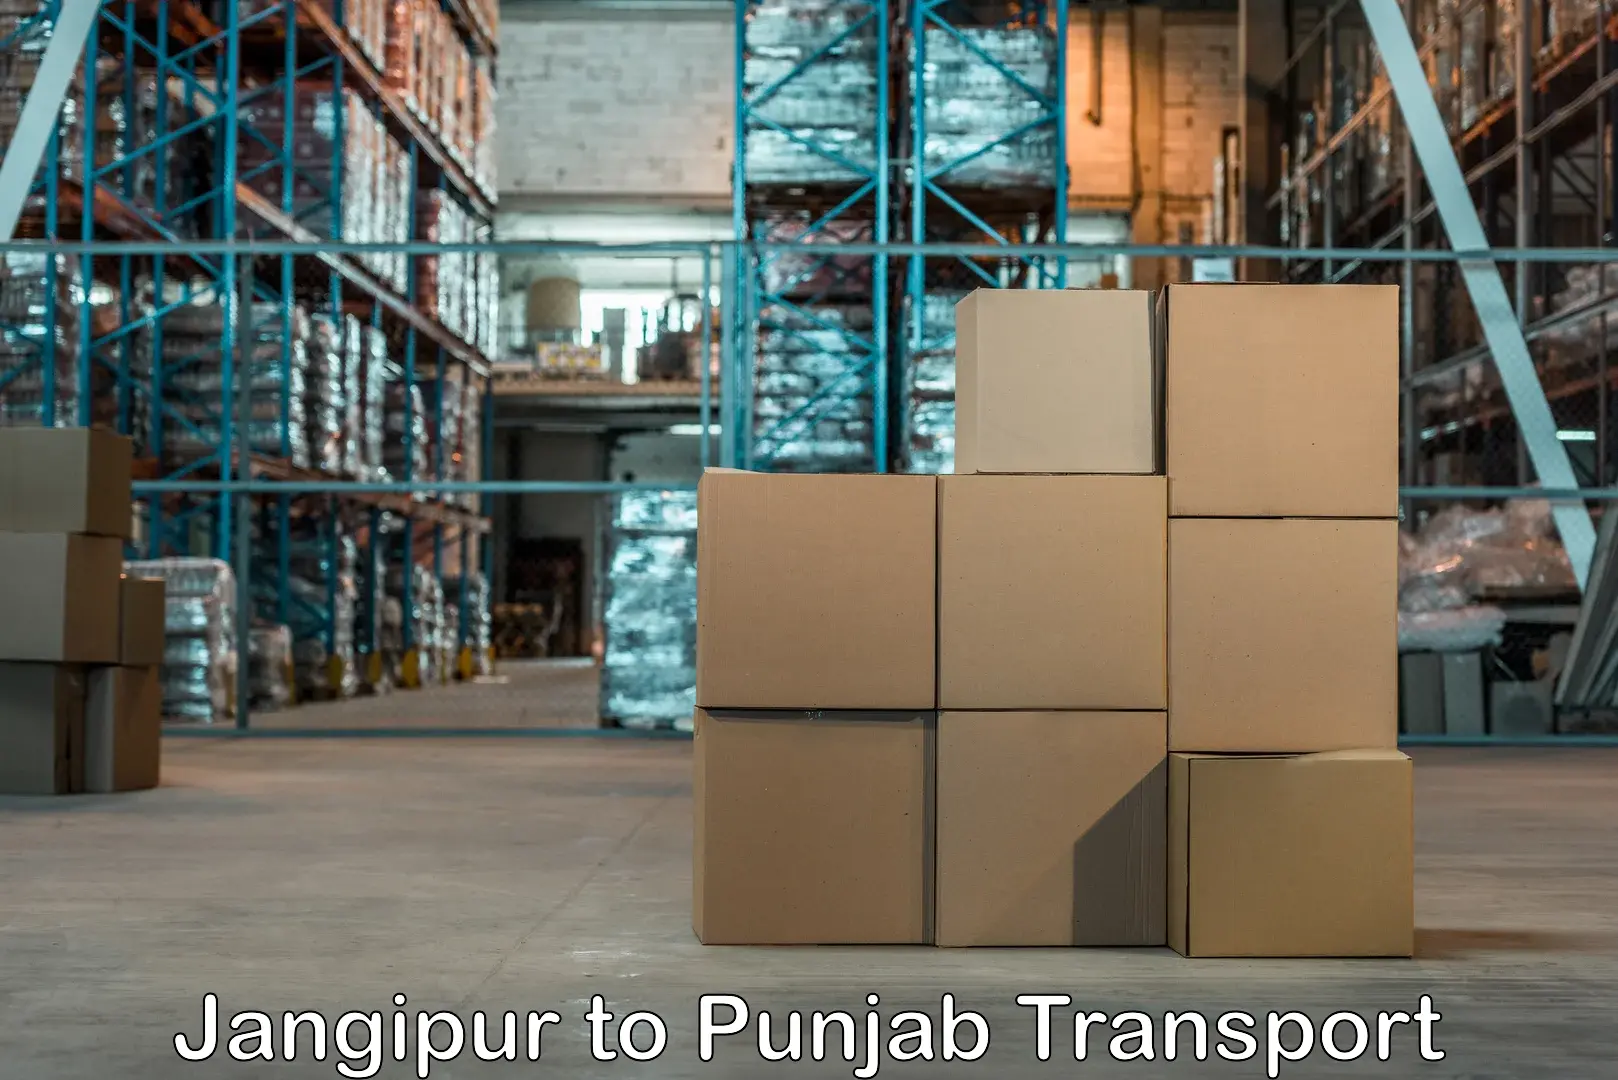 Online transport service Jangipur to Punjab